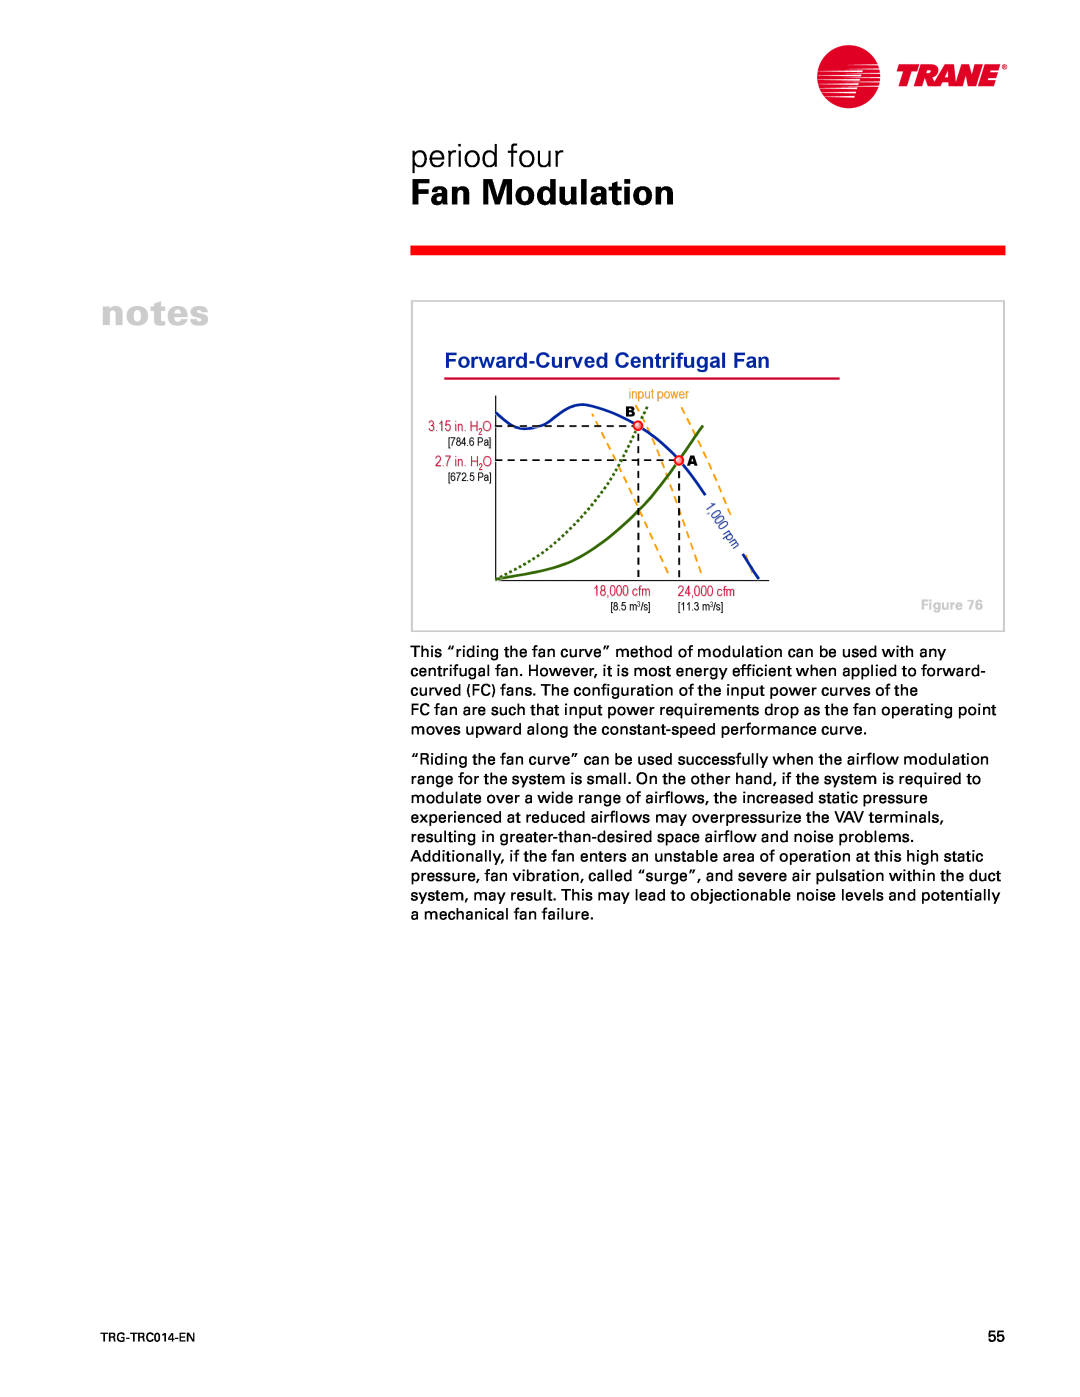 Trane TRG-TRC014-EN manual Forward-CurvedCentrifugal Fan, Fan Modulation, period four 